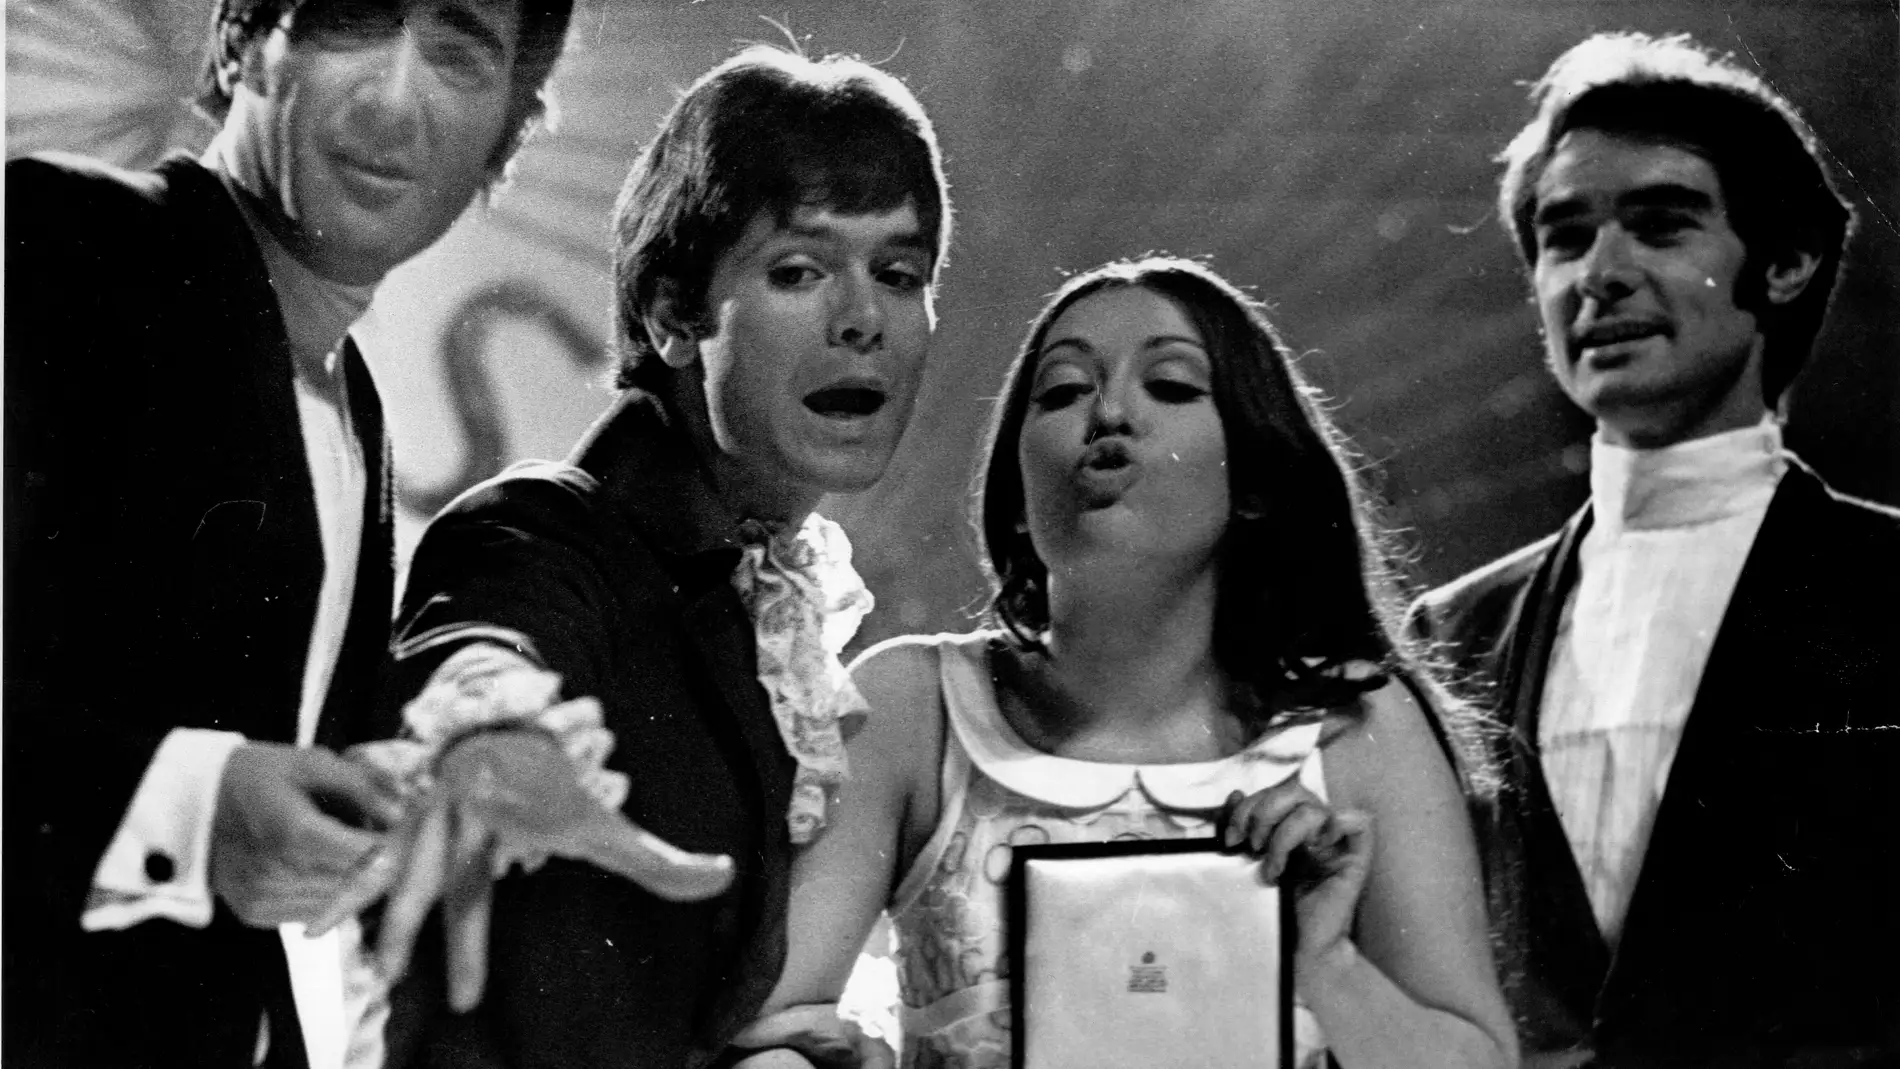 El grupo musical Dúo Dinámico (Manolo de la Calva y Ramón Arcusa) con la cantante Massiel durante el festival de Eurovisión en Londres 1968